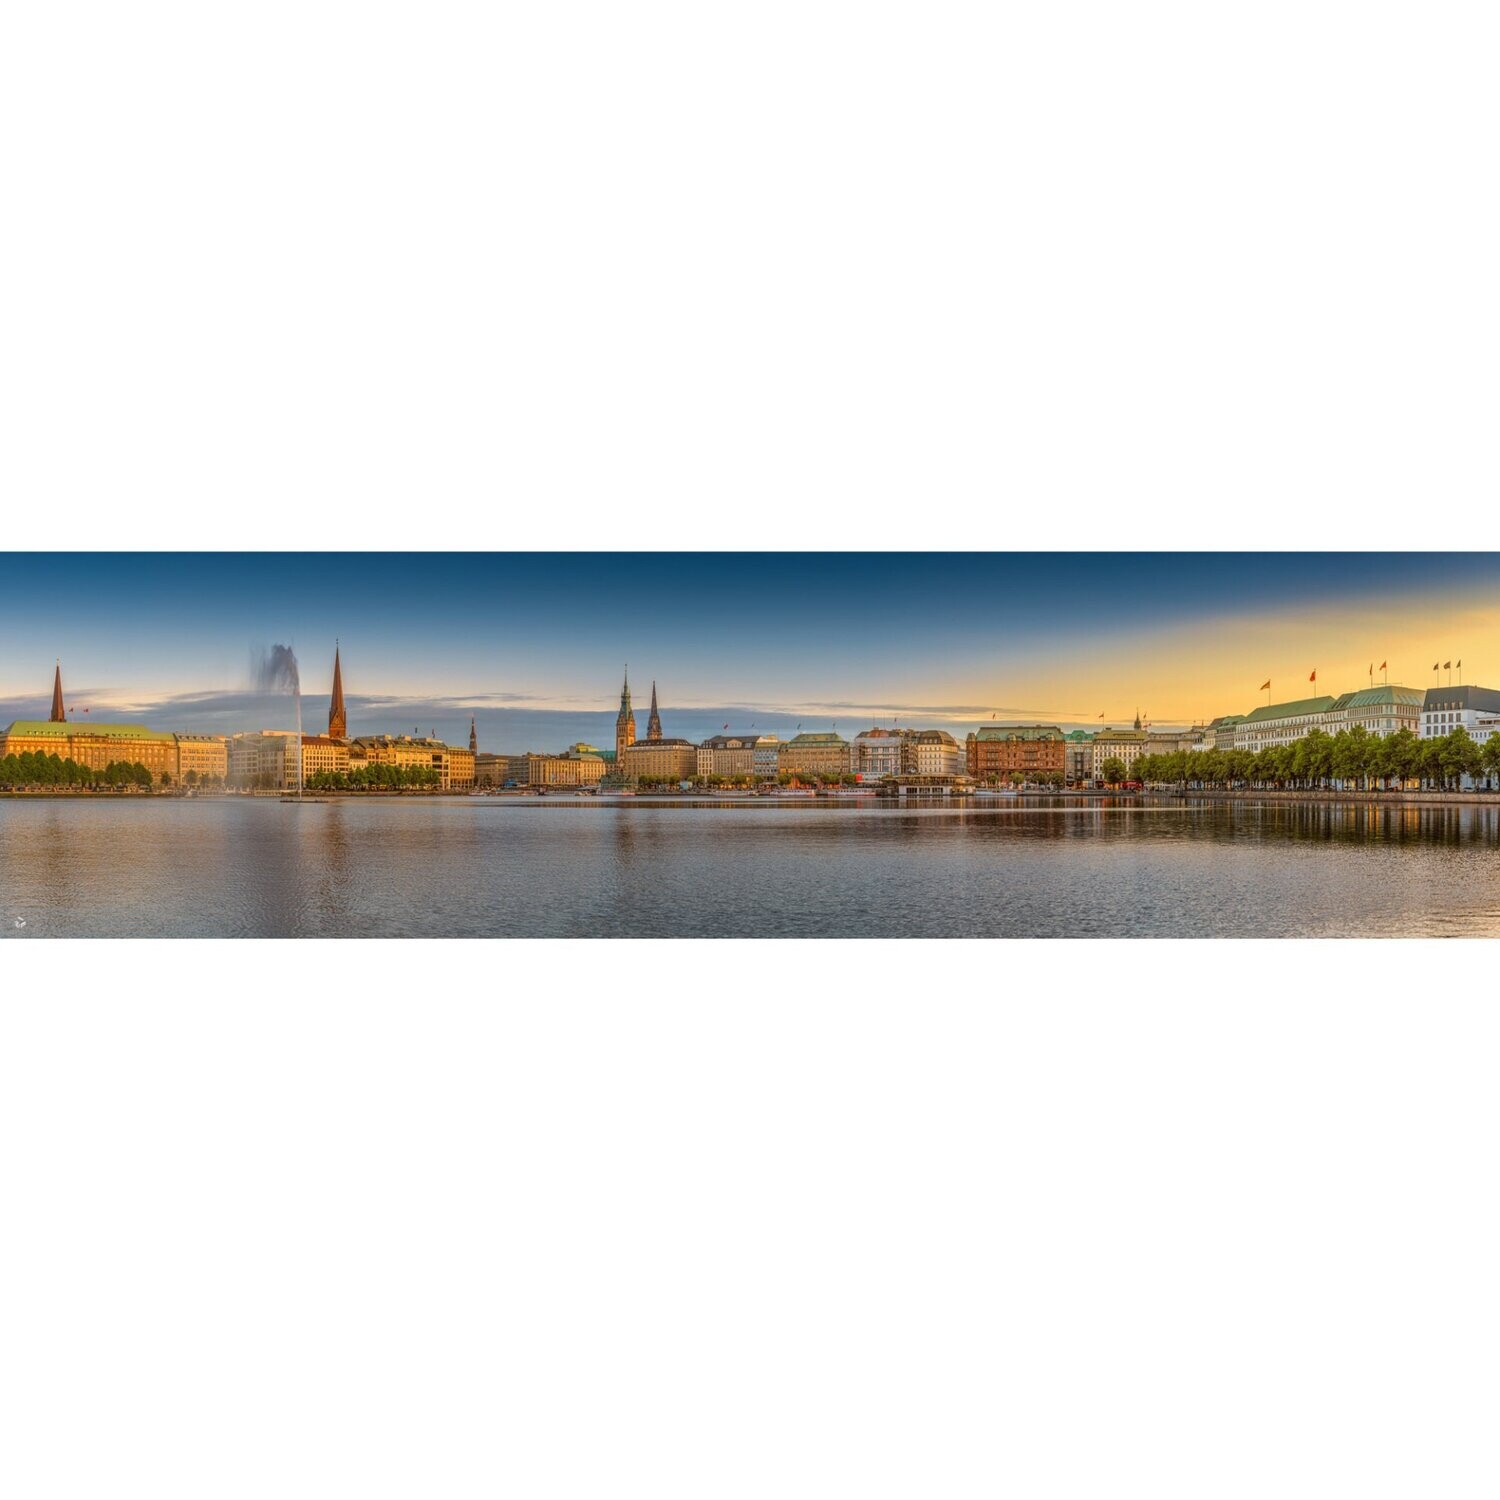 Hamburg Foto Datei - Binnenalster einzigartiges Panorama, Abmessung nach Wunsch, max. Höhe 169,91cm x Breite 658,57cm, zum Selbstdruck, Lieferung per filesharing